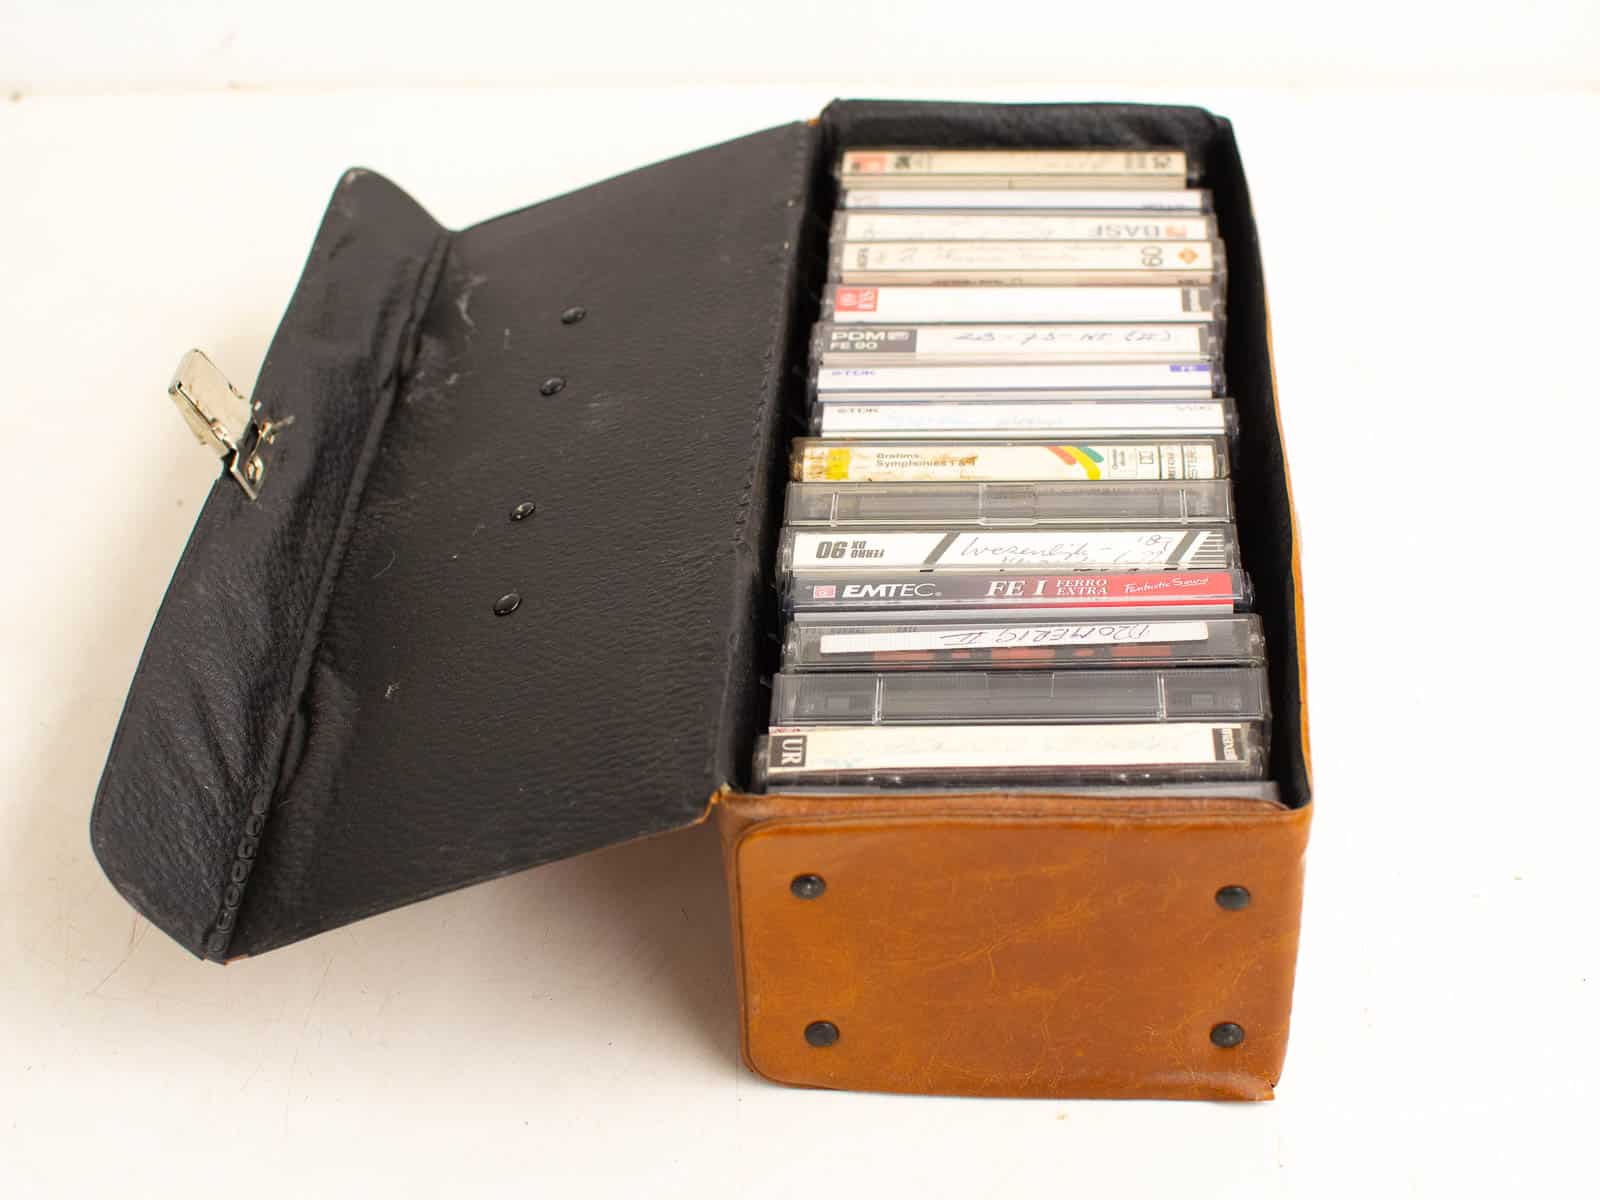 16 cassettebandjes  in koffertje 27639